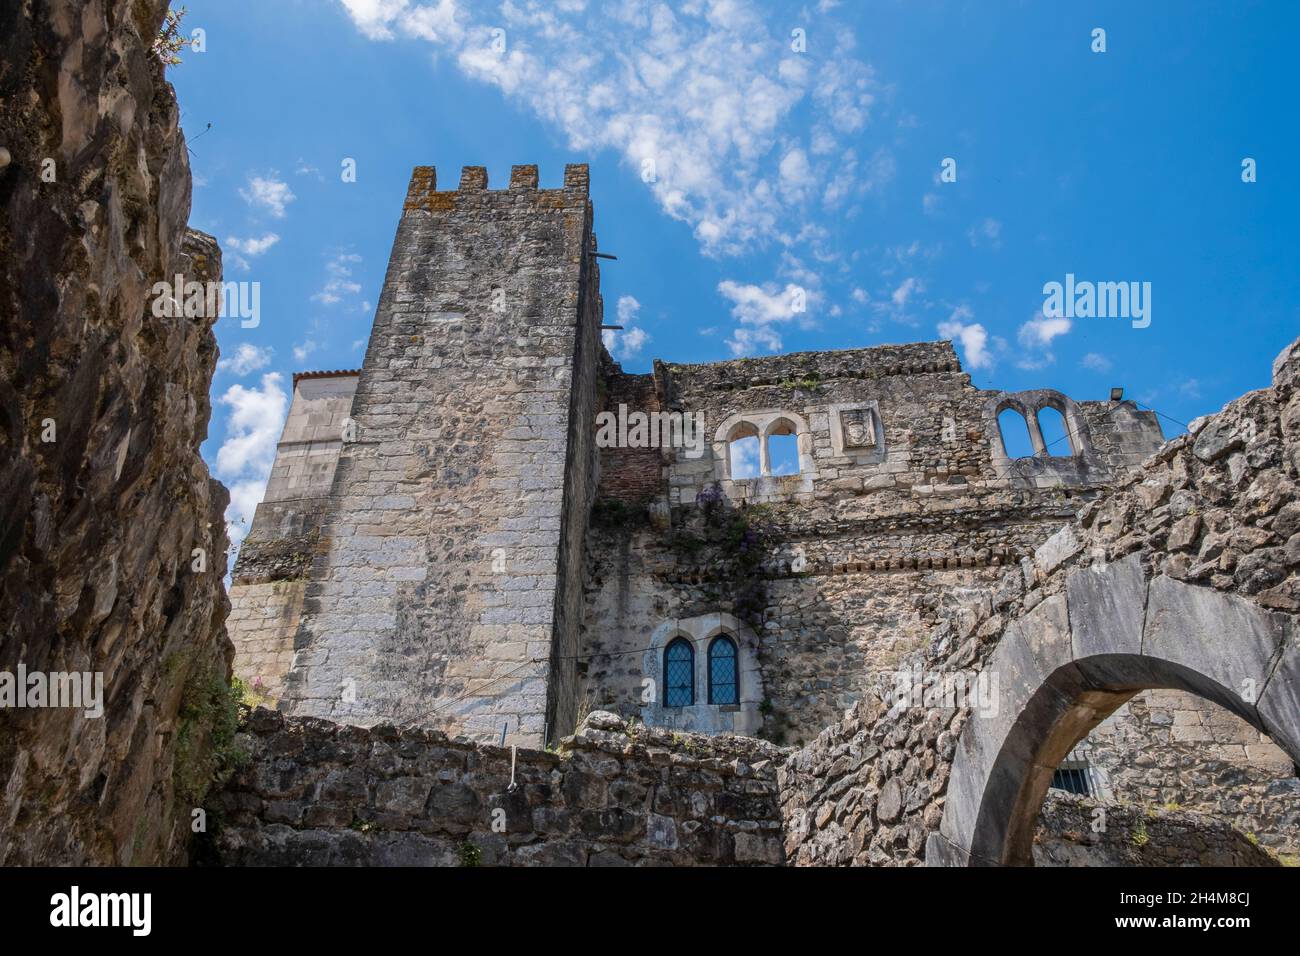 Leiria, Portugal. Palace of the Castelo de Leiria (Leiria Castle) Stock Photo